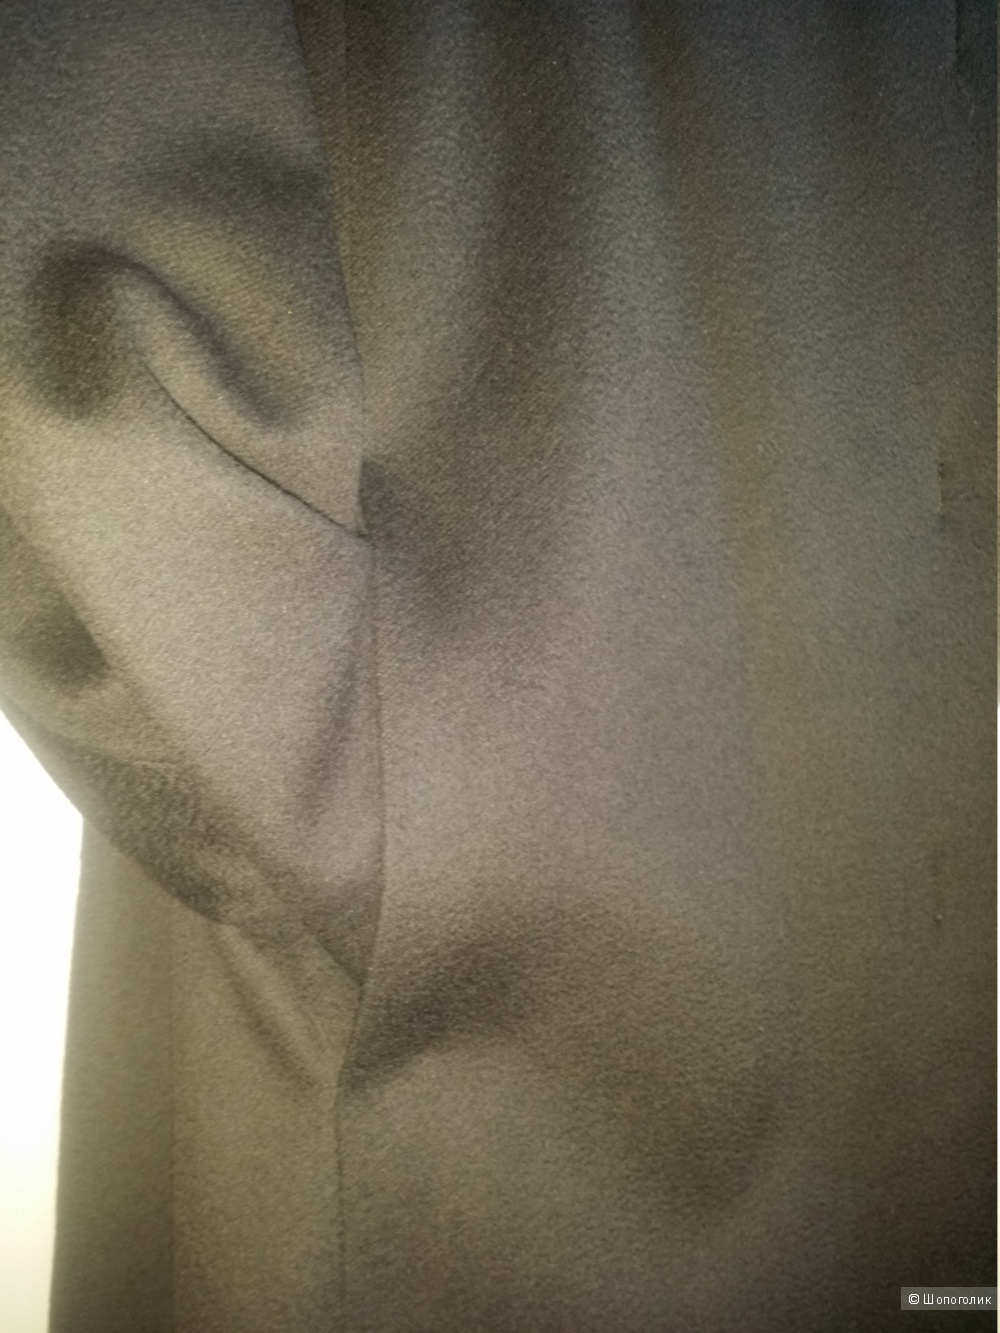 Кашемировое пальто шоколадного цвета  Immagi, 44